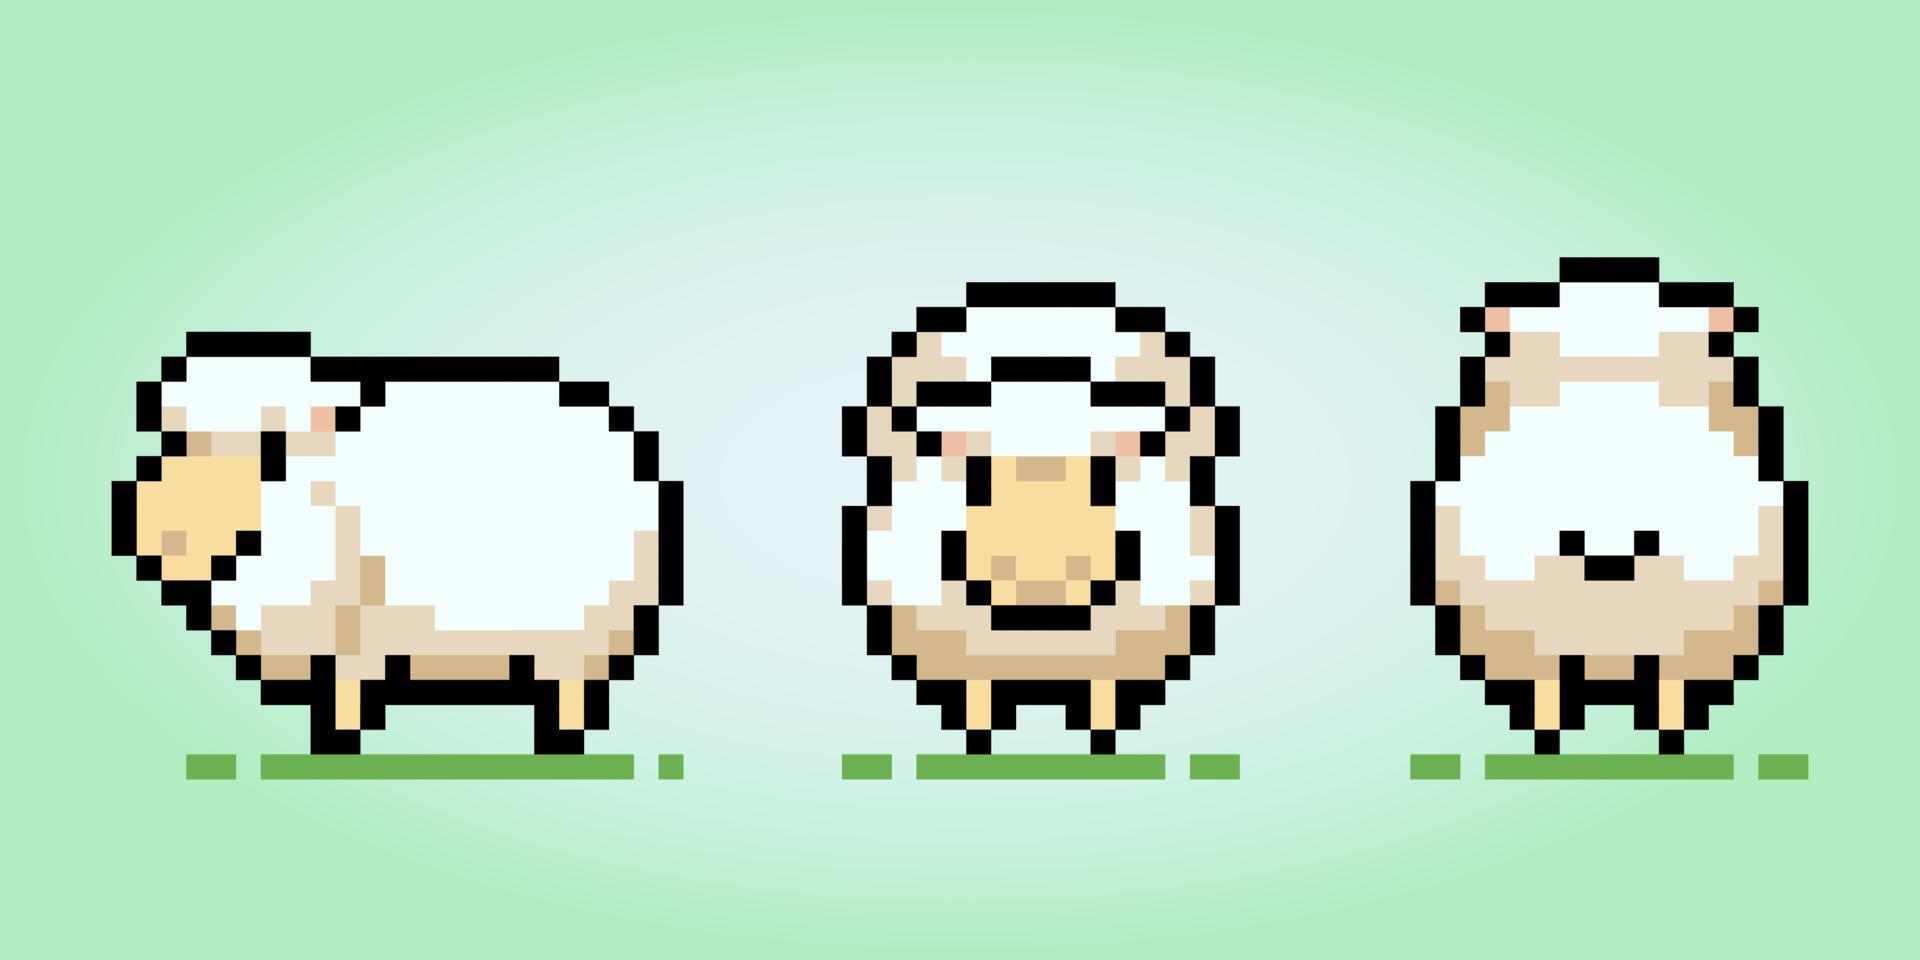 8 beetje pixel schapen met drie visie, voorkant, kant en rug. dier voor spel middelen en kruis steek patroon, in vector illustratie